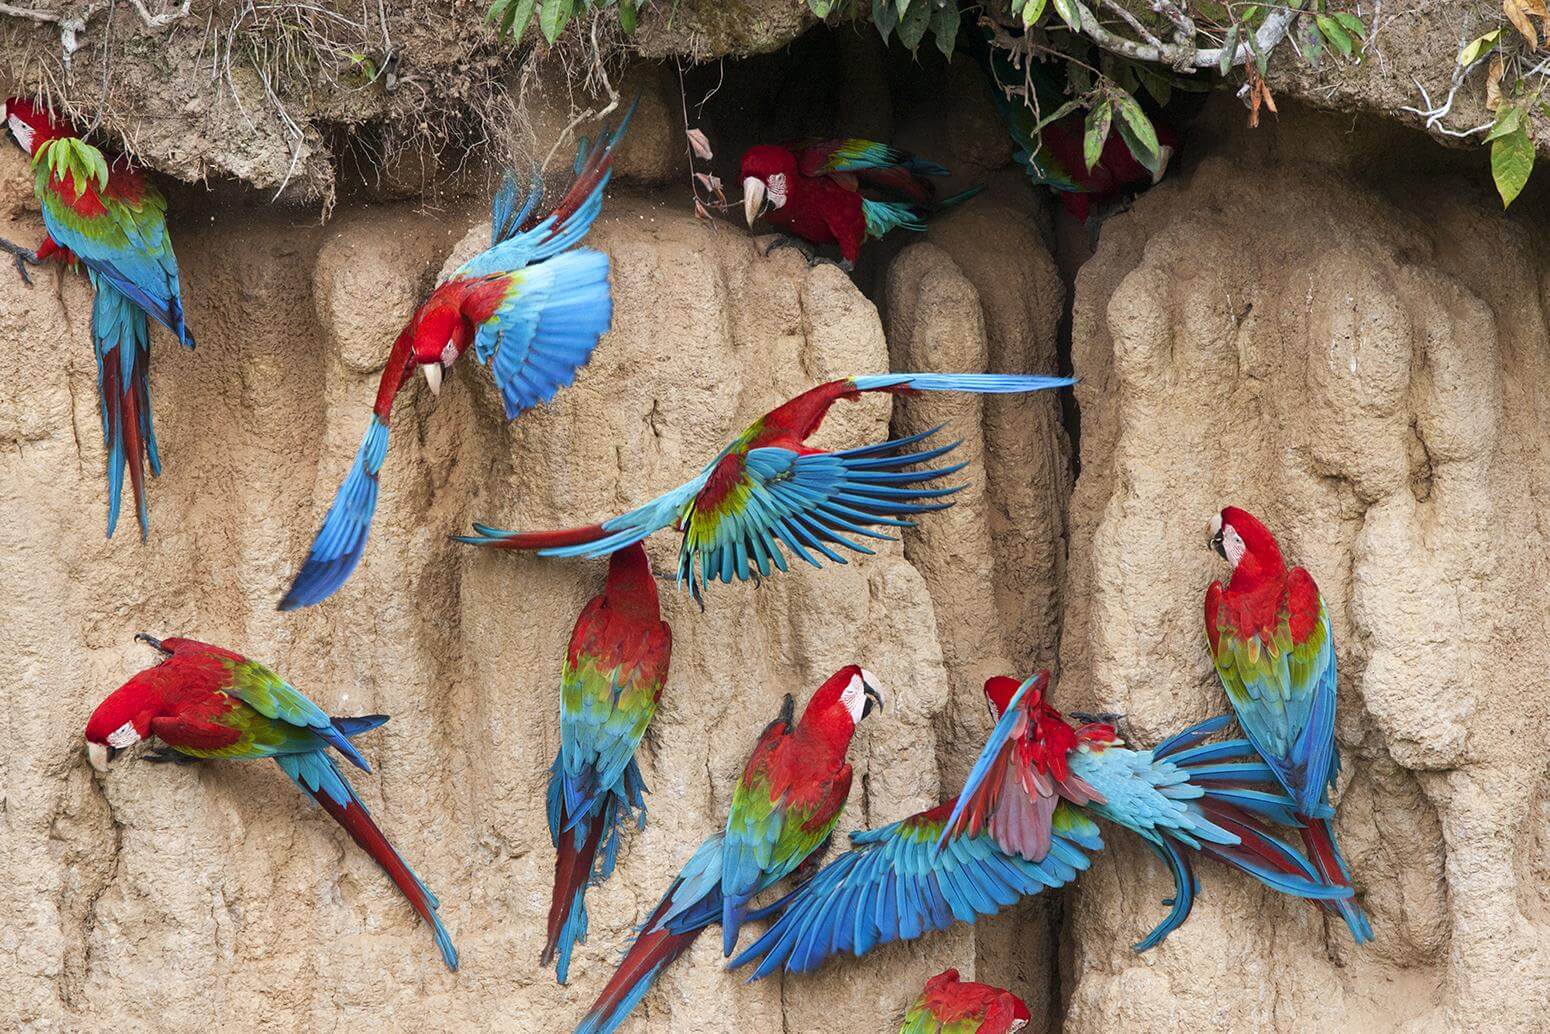 Parrot World - Aras